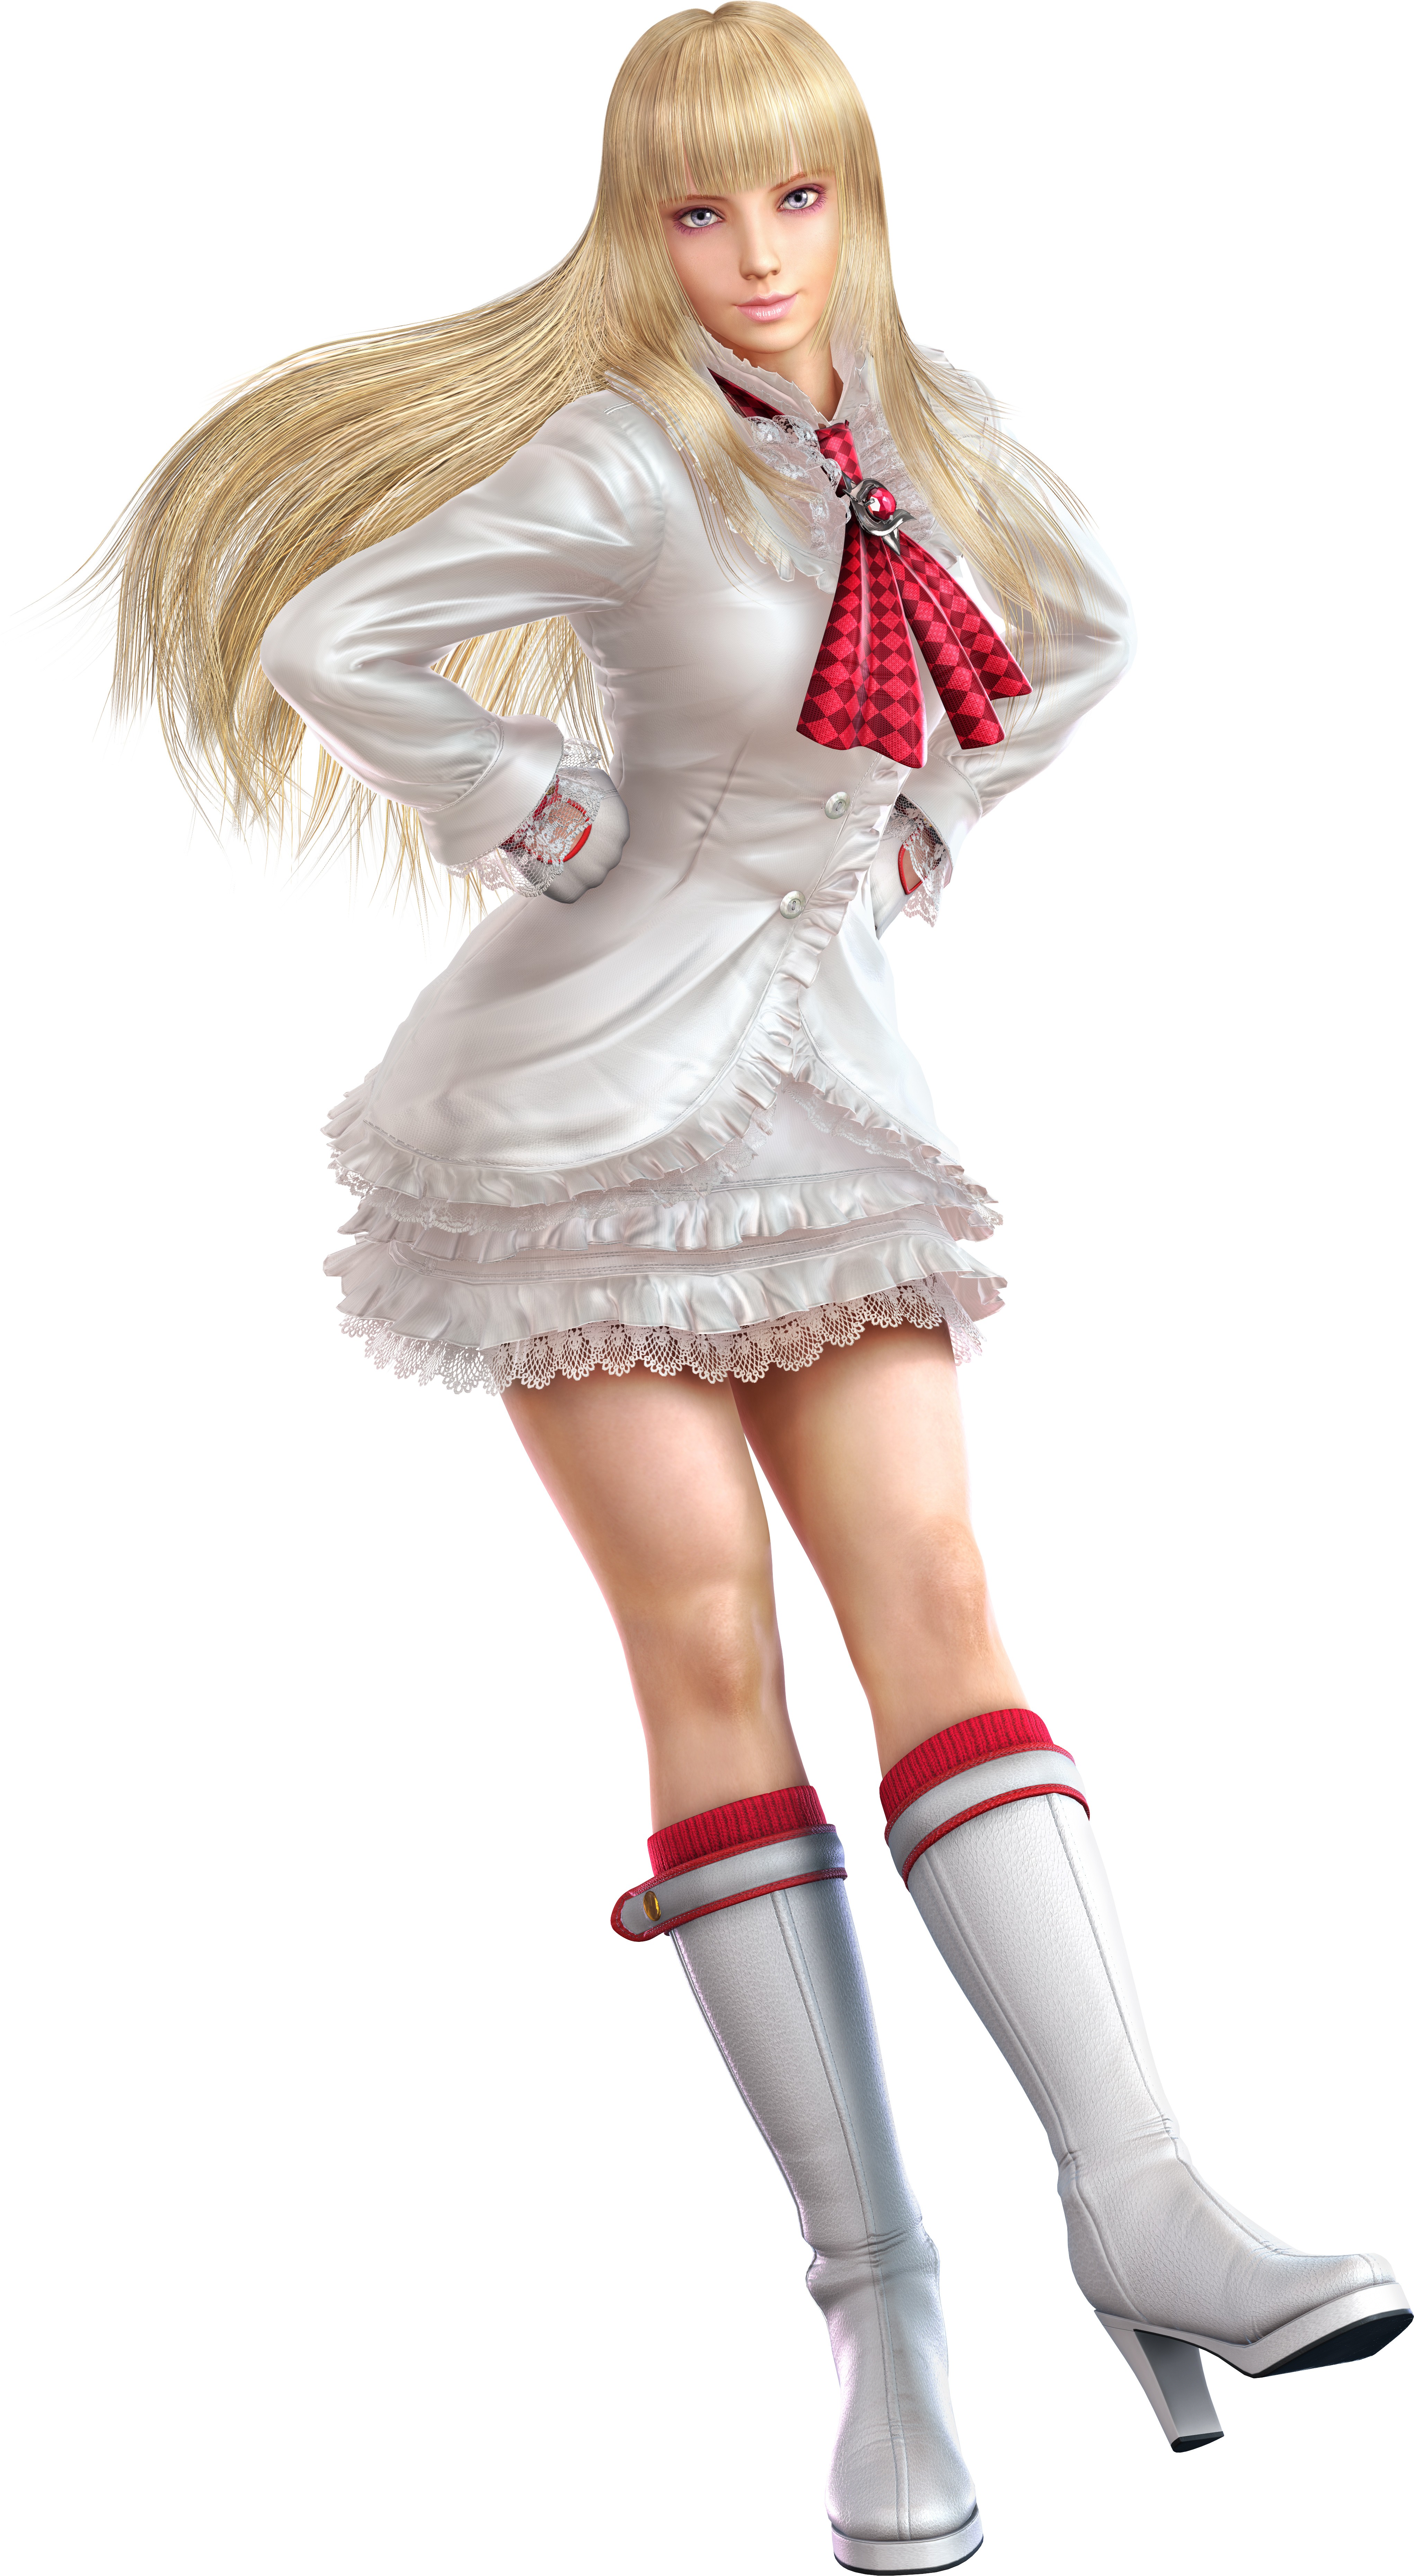 Emilie De Rochefort Tekken Video Games Warrior Blonde Long Hair White Background Simple Background 4082x7438